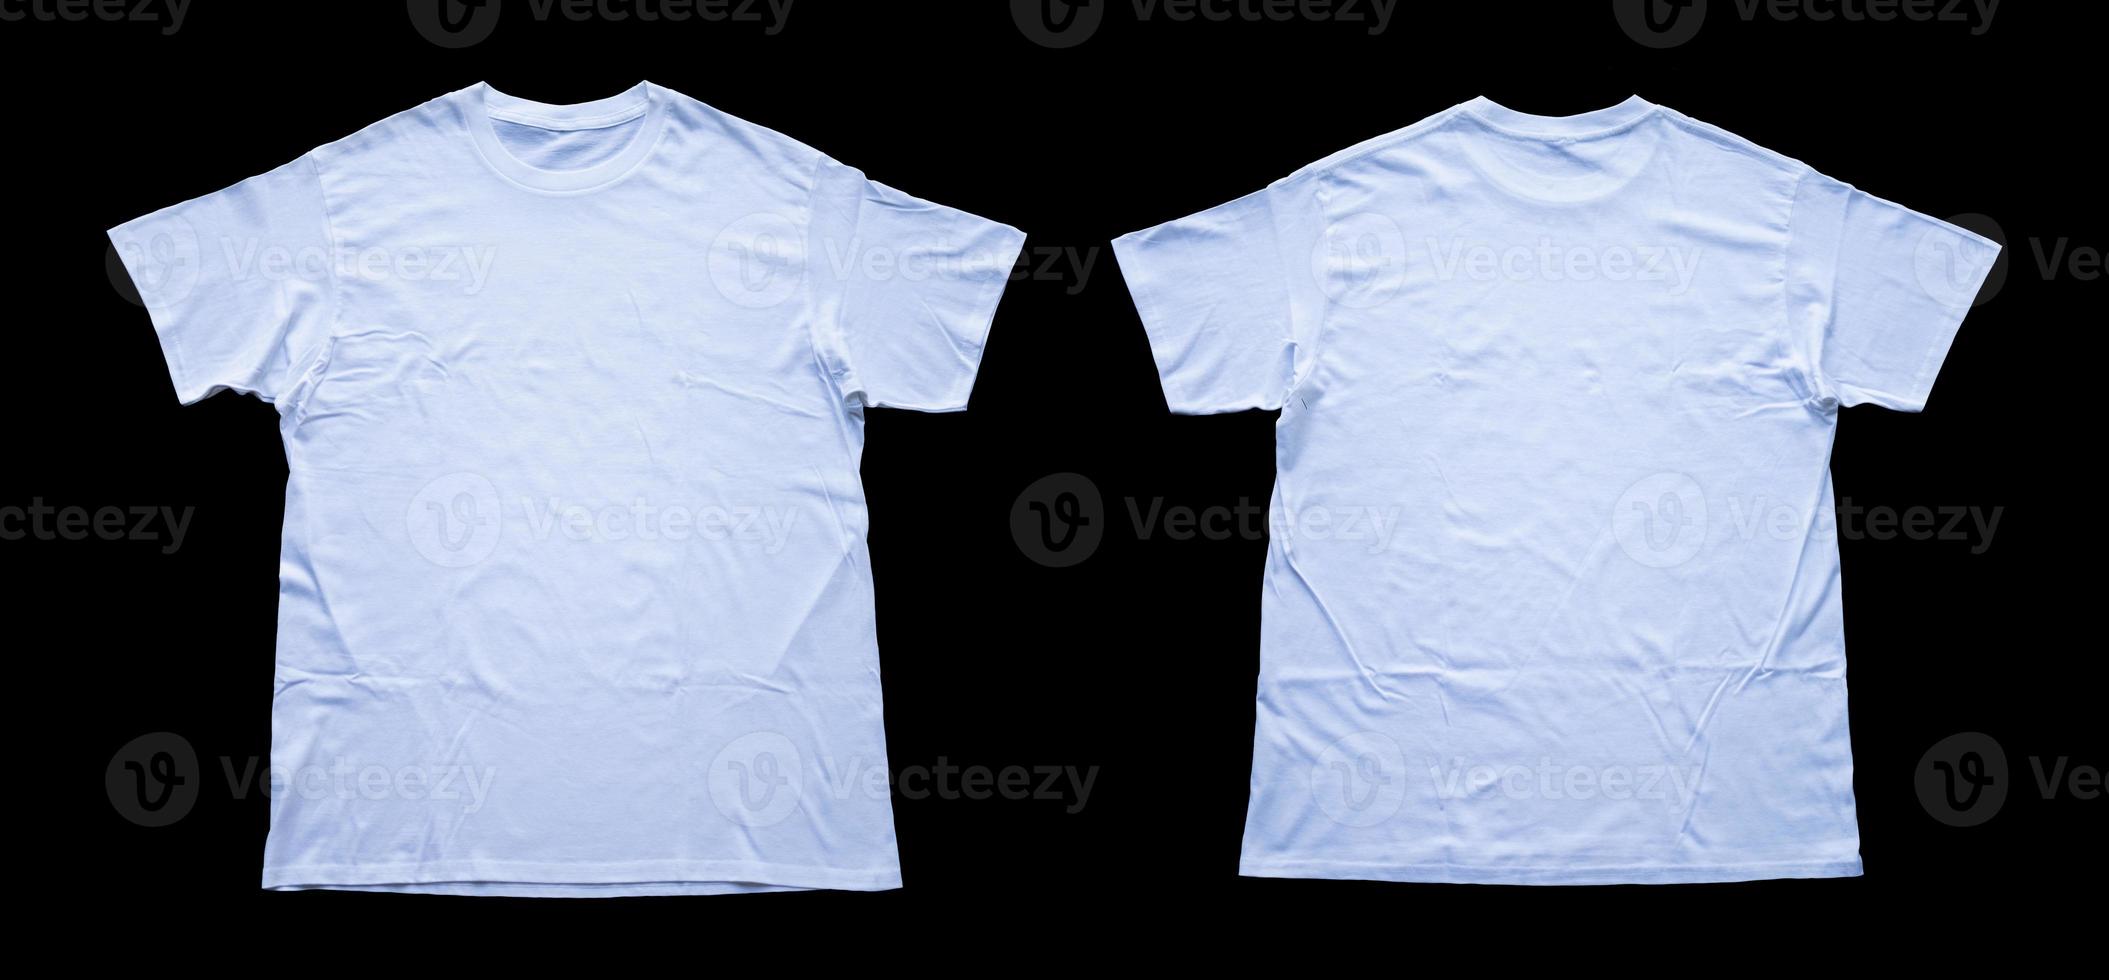 enkel t-tröjor för attrapp design. tom t-tröjor från de främre och tillbaka se isolerat bakgrund foto